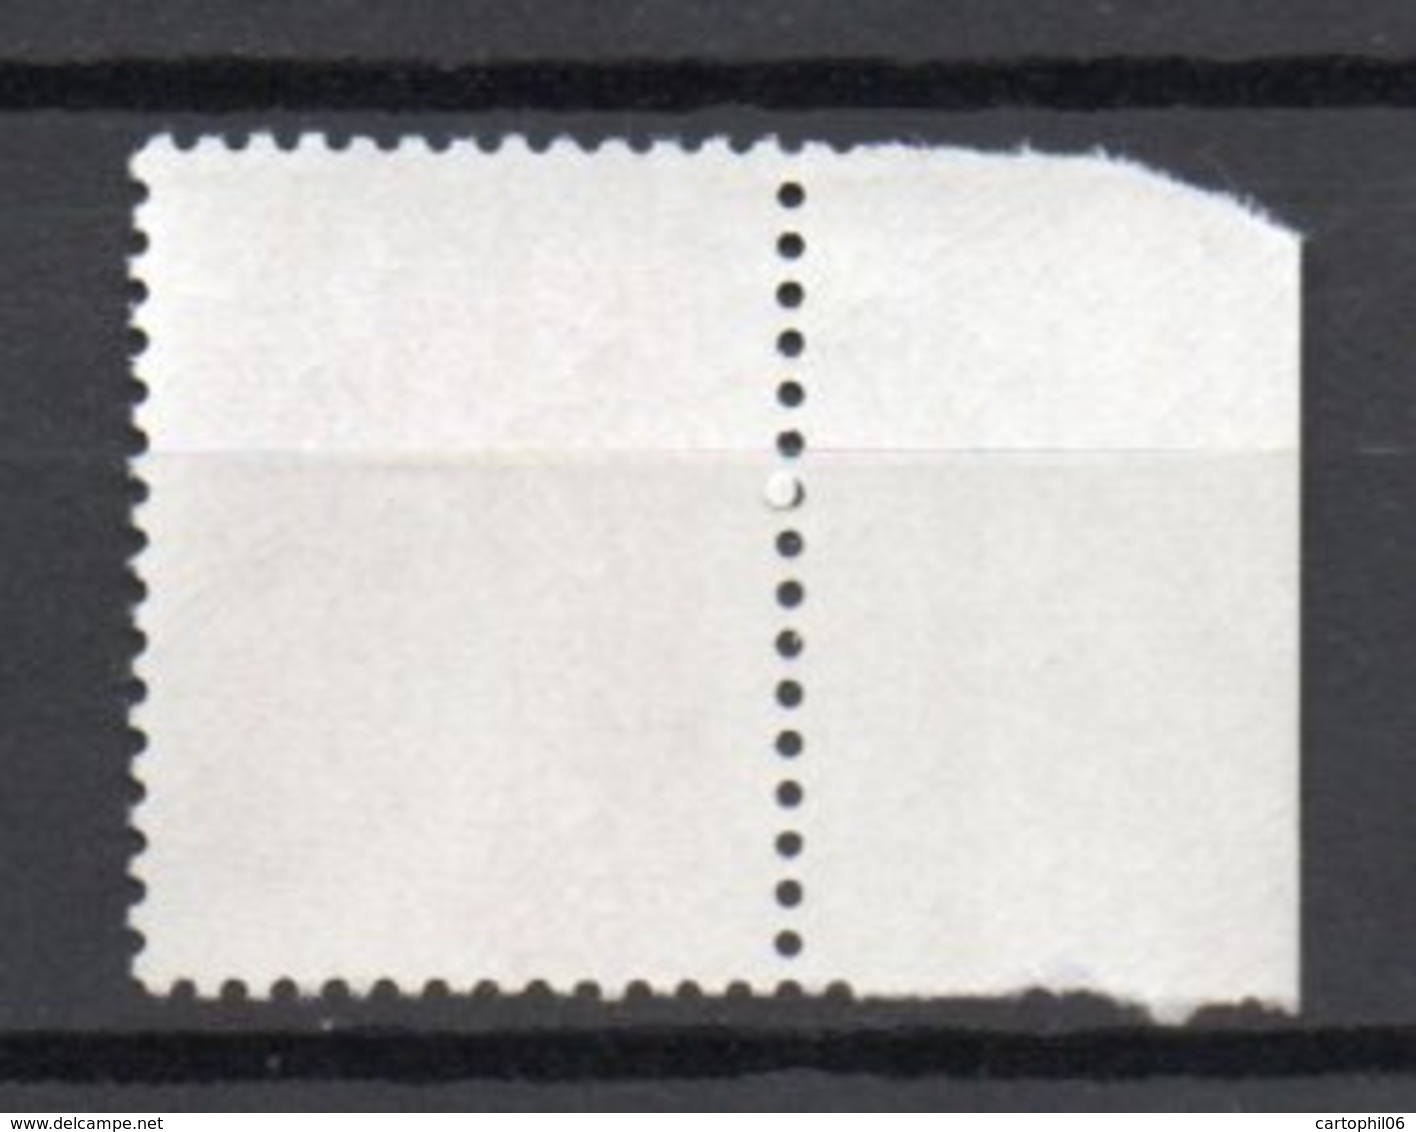 - FRANCE Variété N° 2127c ** - 4 F. Carmin Type Sabine 1981 - 1 BARRE PHO A GAUCHE + 2 A DROITE - Cote 55 EUR - - Unused Stamps